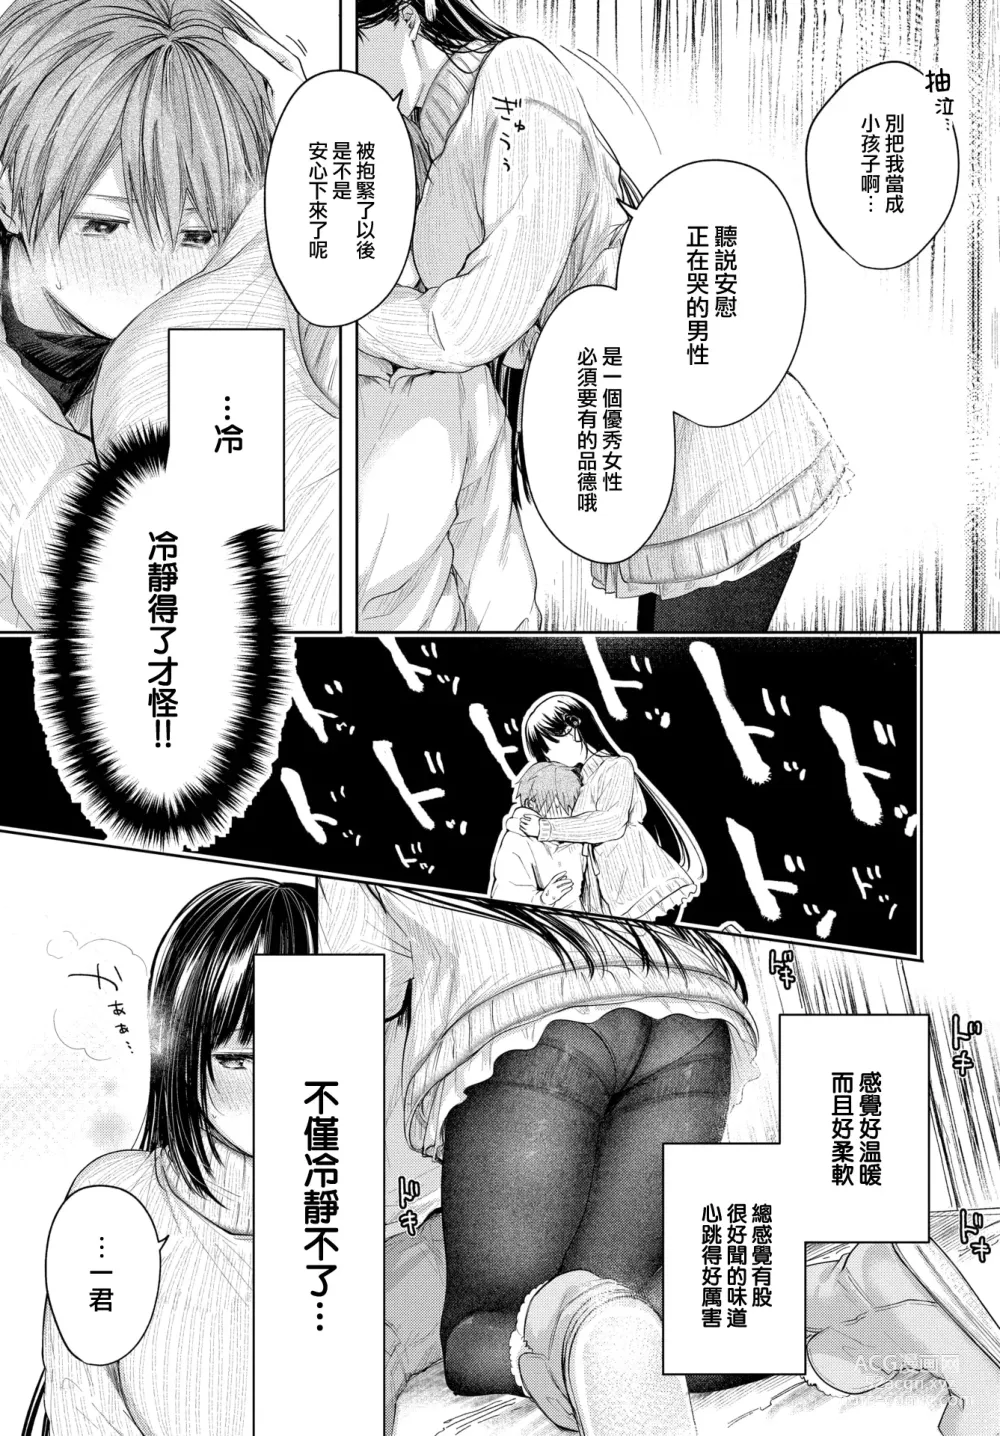 Page 12 of manga Ii mo Amai mo Kimi to Dake.